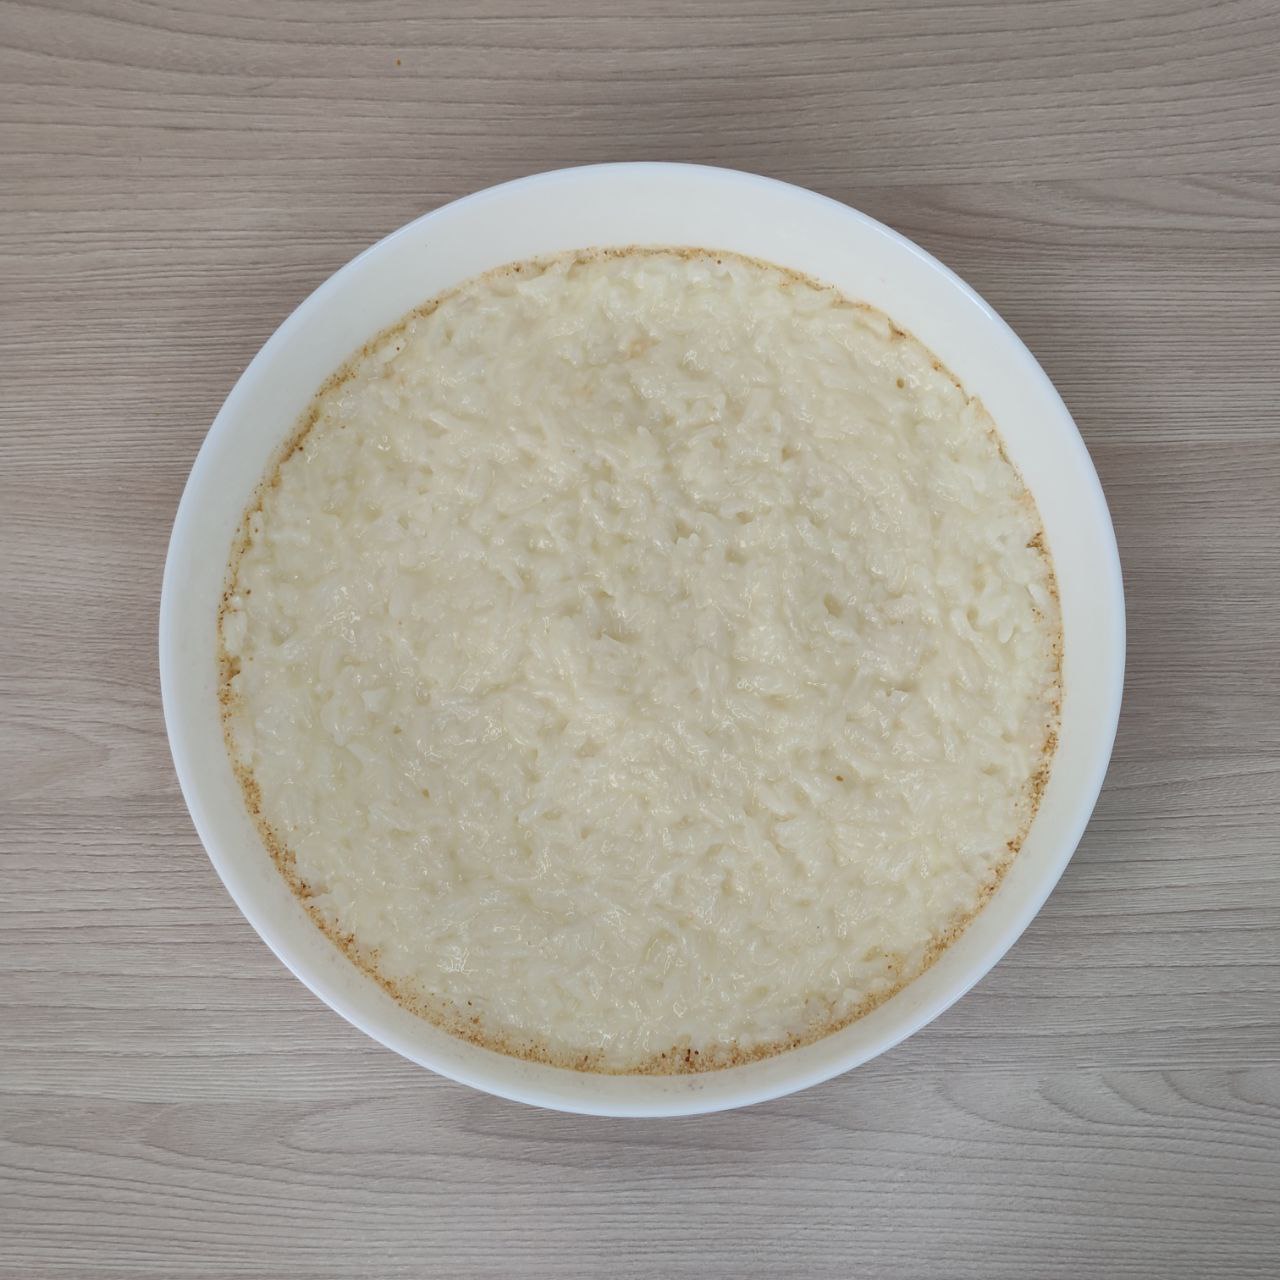 рисовая запеканка из готового длиннозёрного риса – 7 шаг